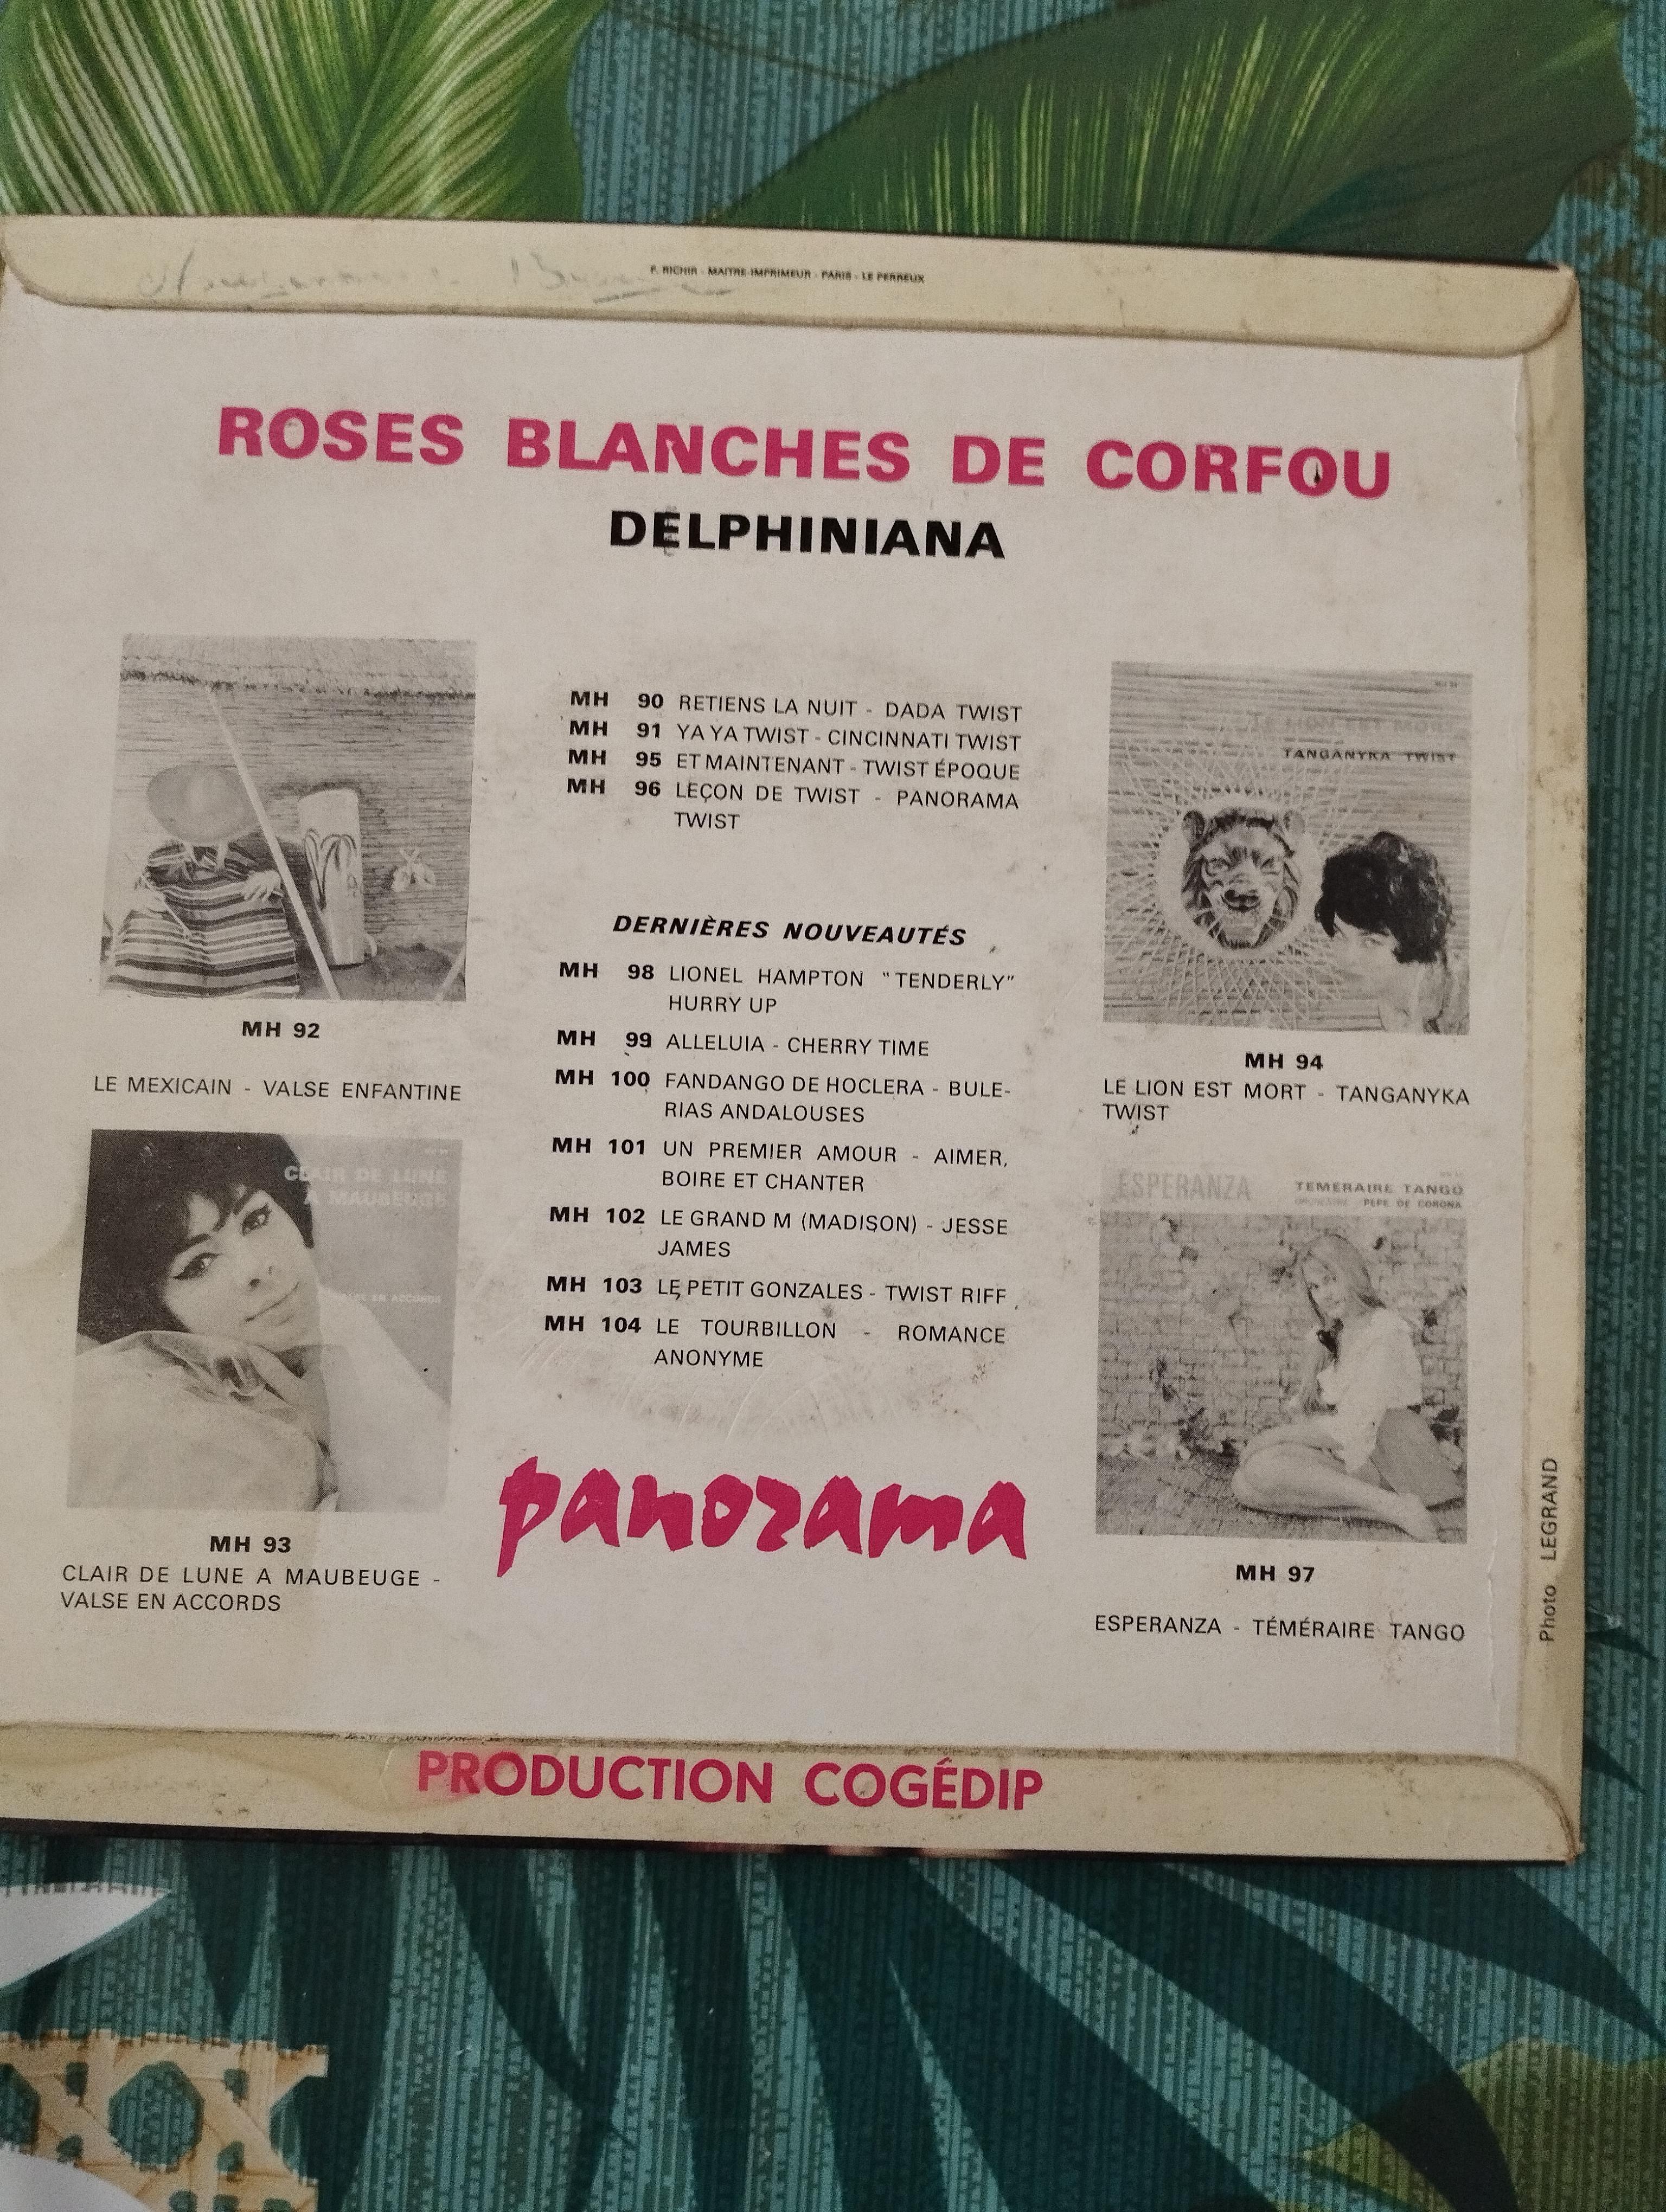 troc de troc disque vinyle 45t delphiniana - roses blanches de corfou image 1